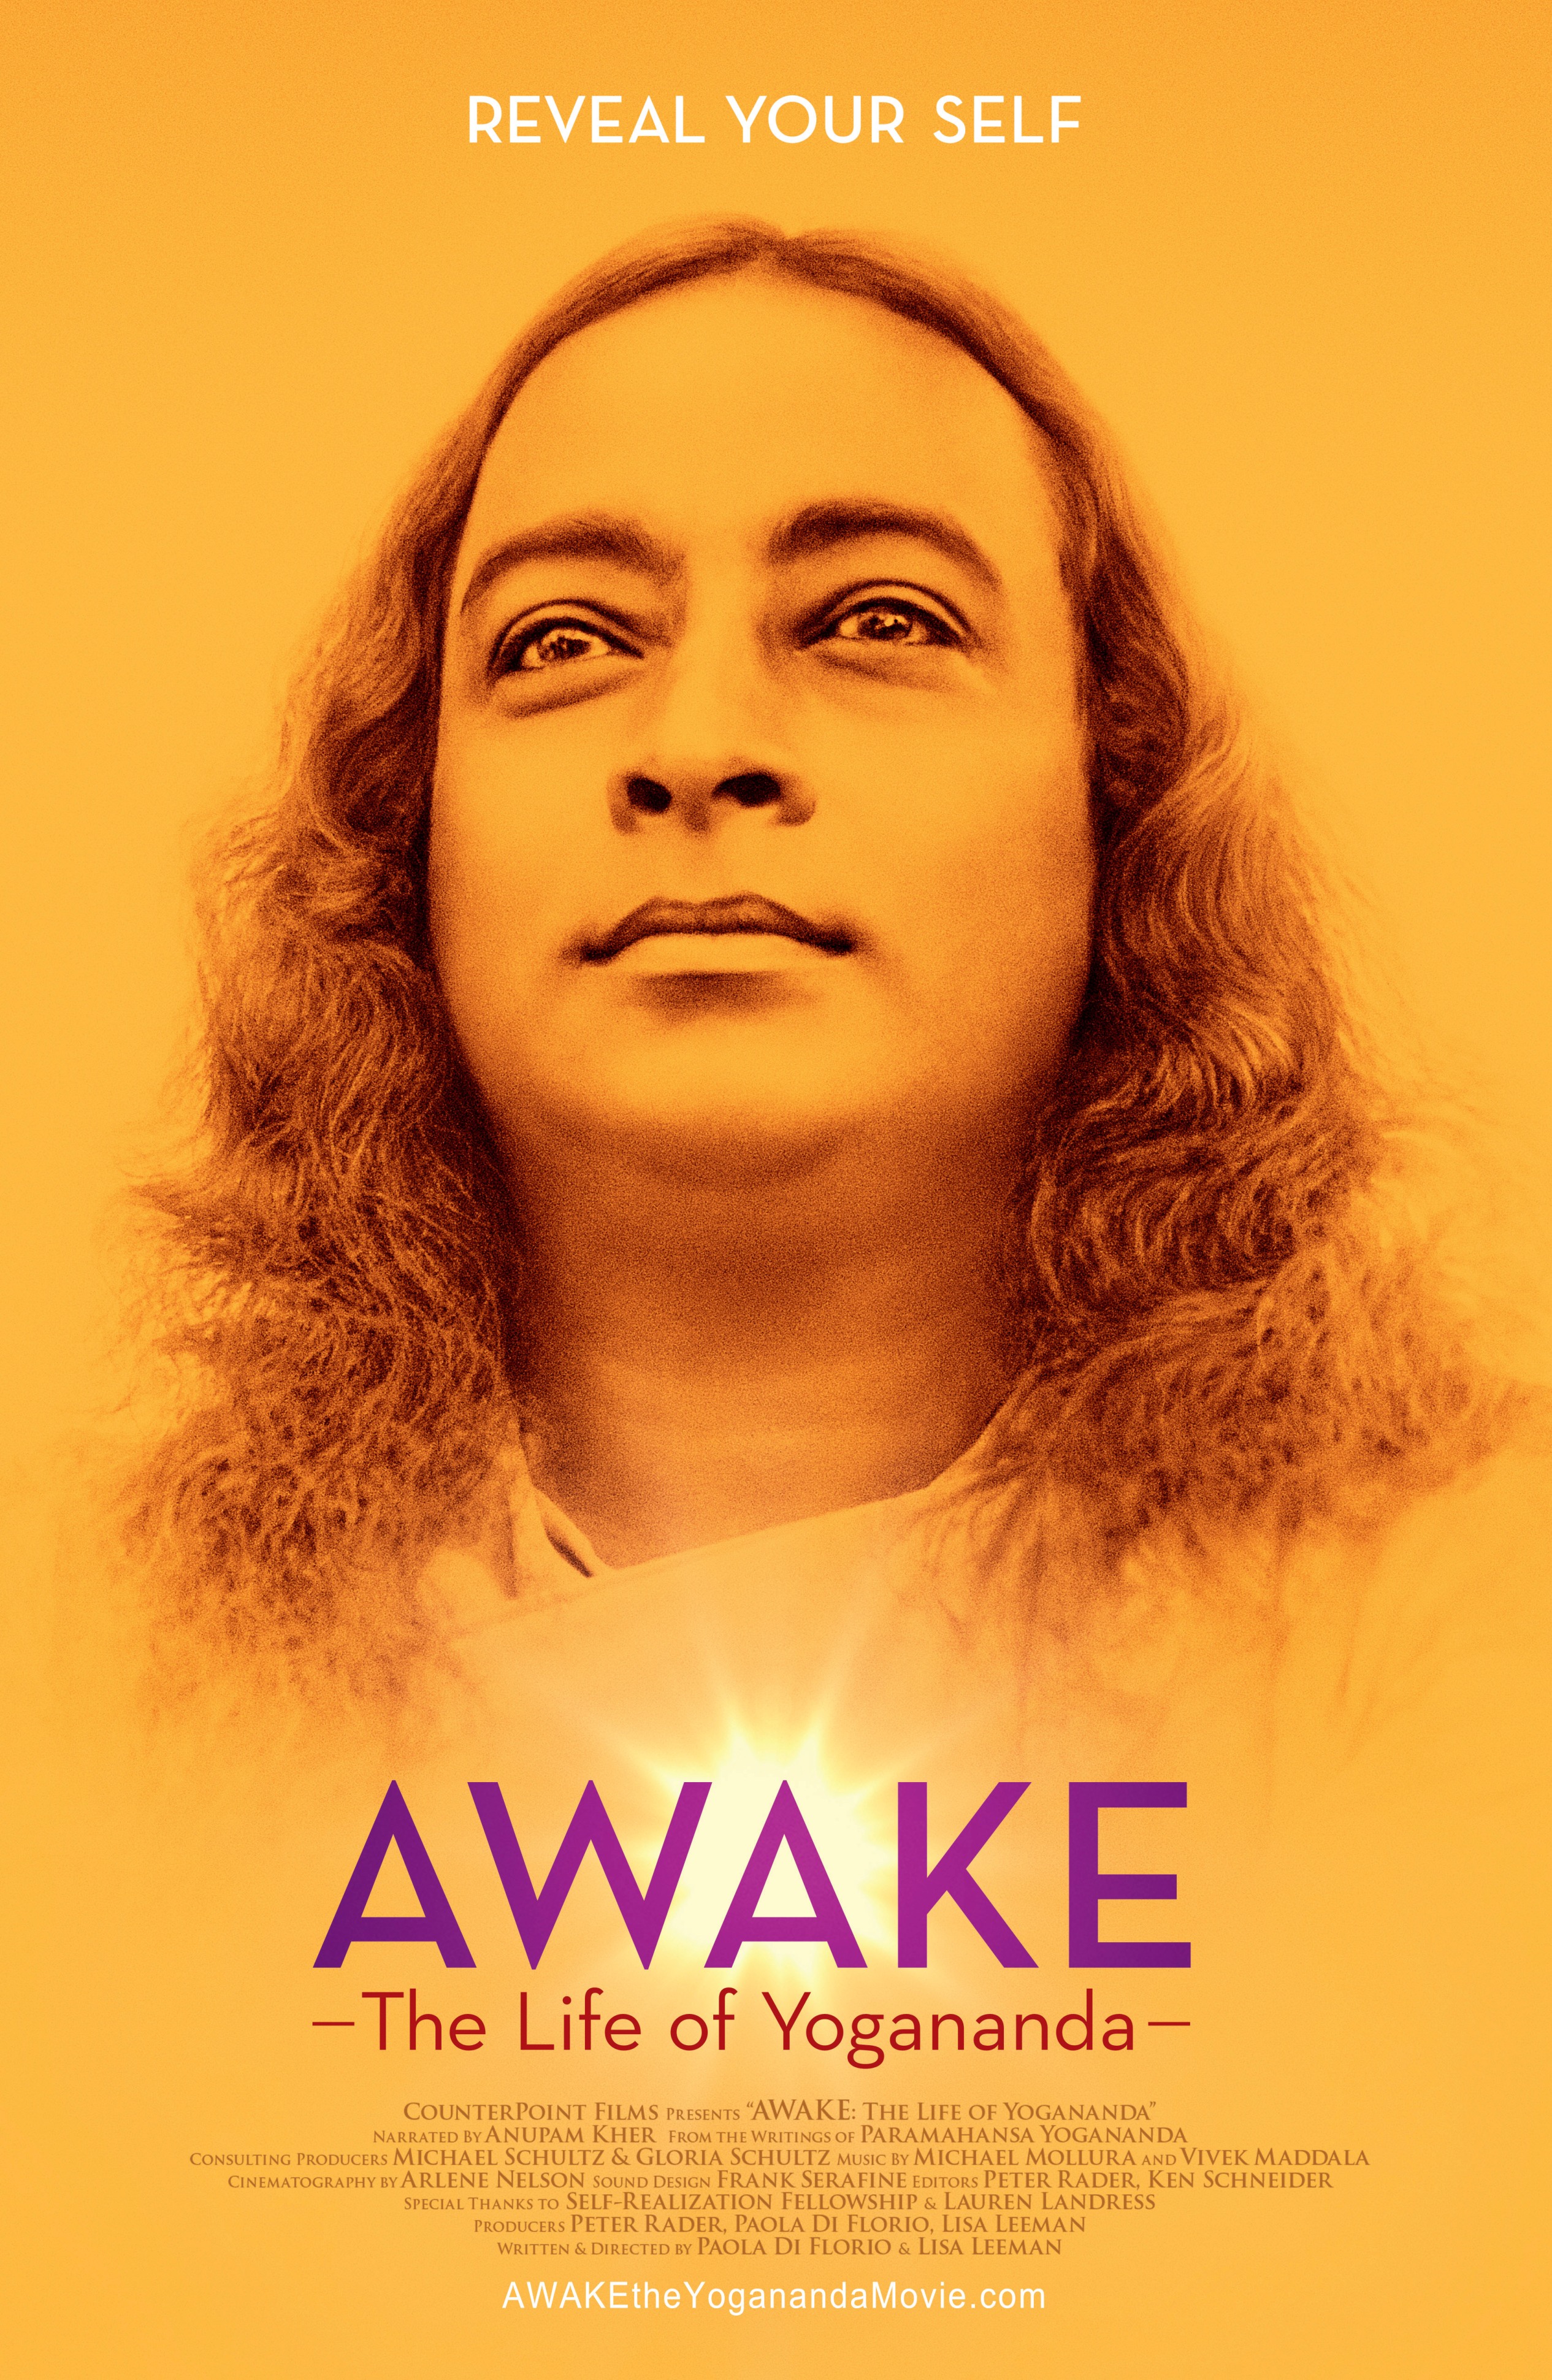 awaken or awoken